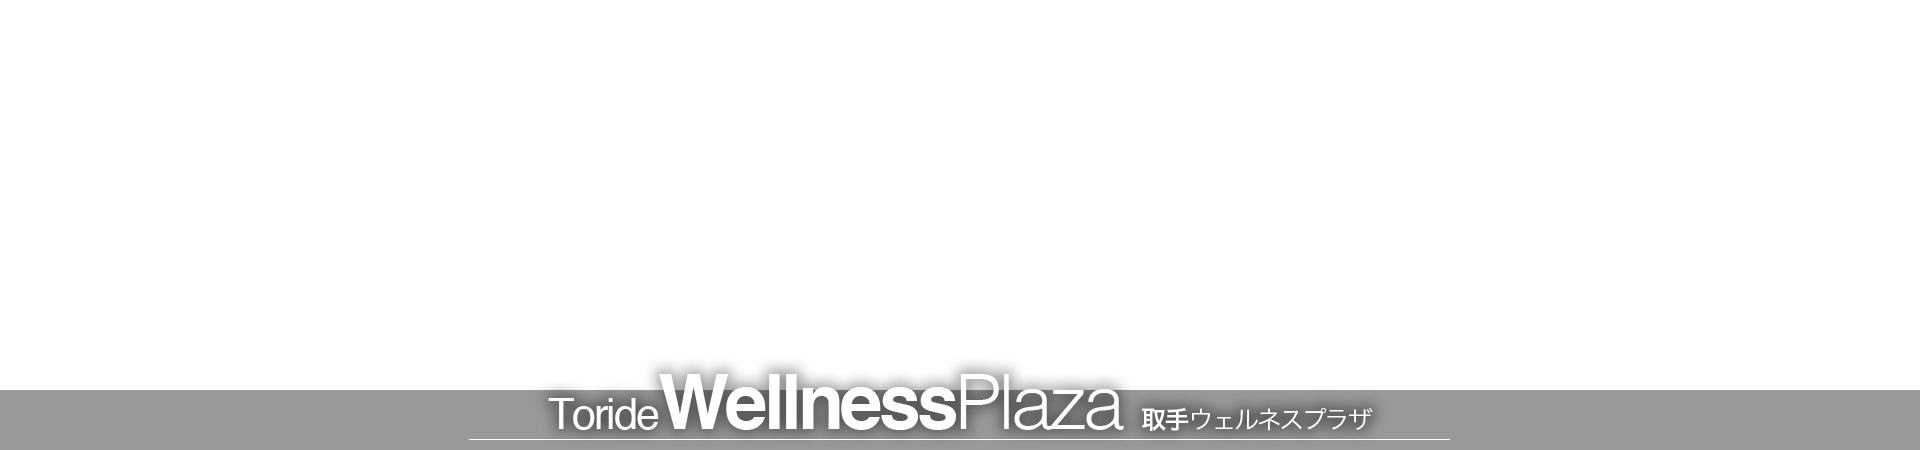 Toride Wellness Plaza